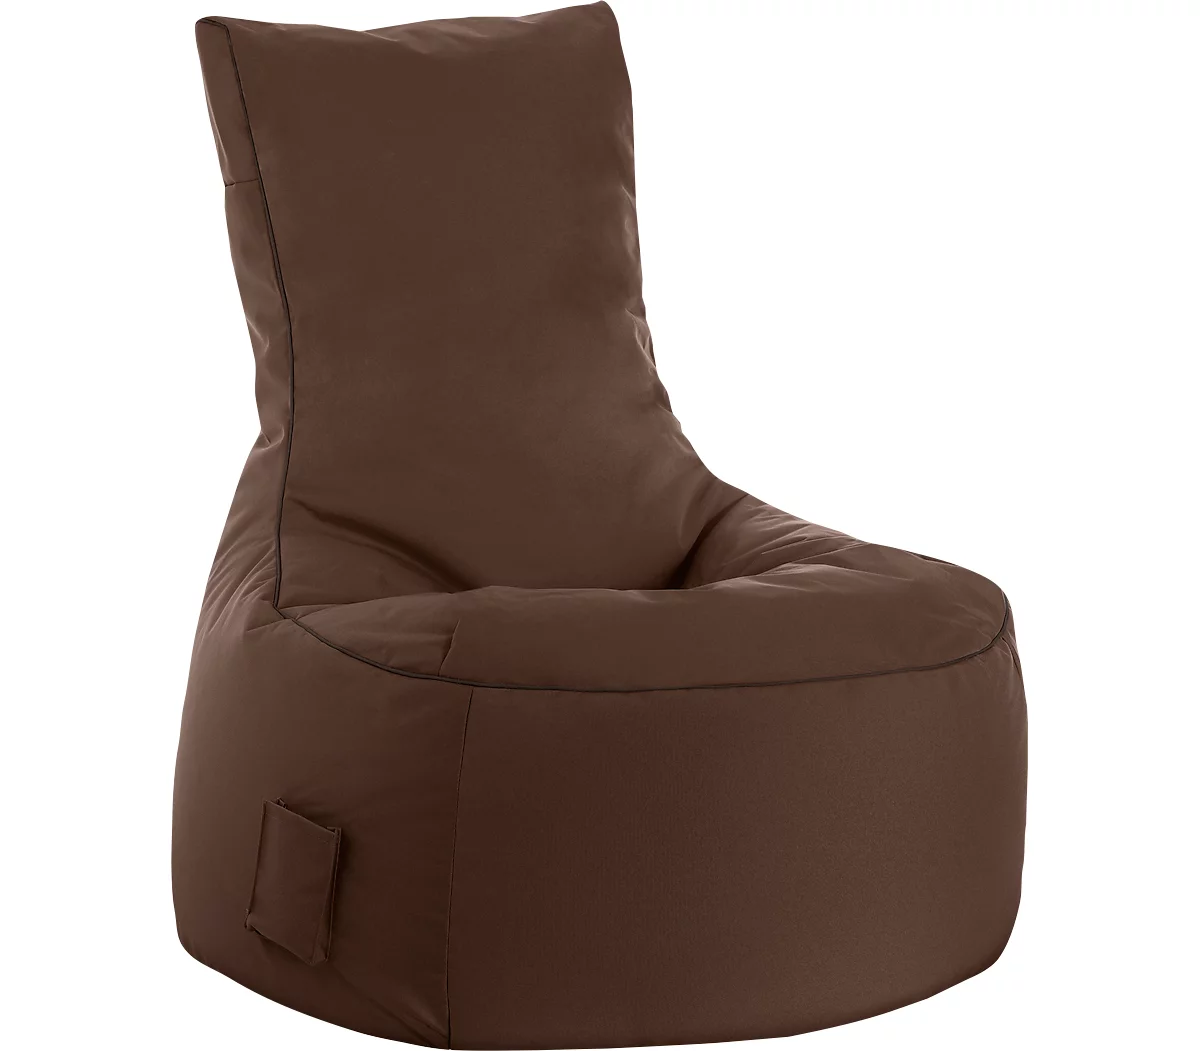 Sitzsack swing scuba®, 100% Polyester, abwaschbar, B 650 x T 900 x H 950 mm, braun